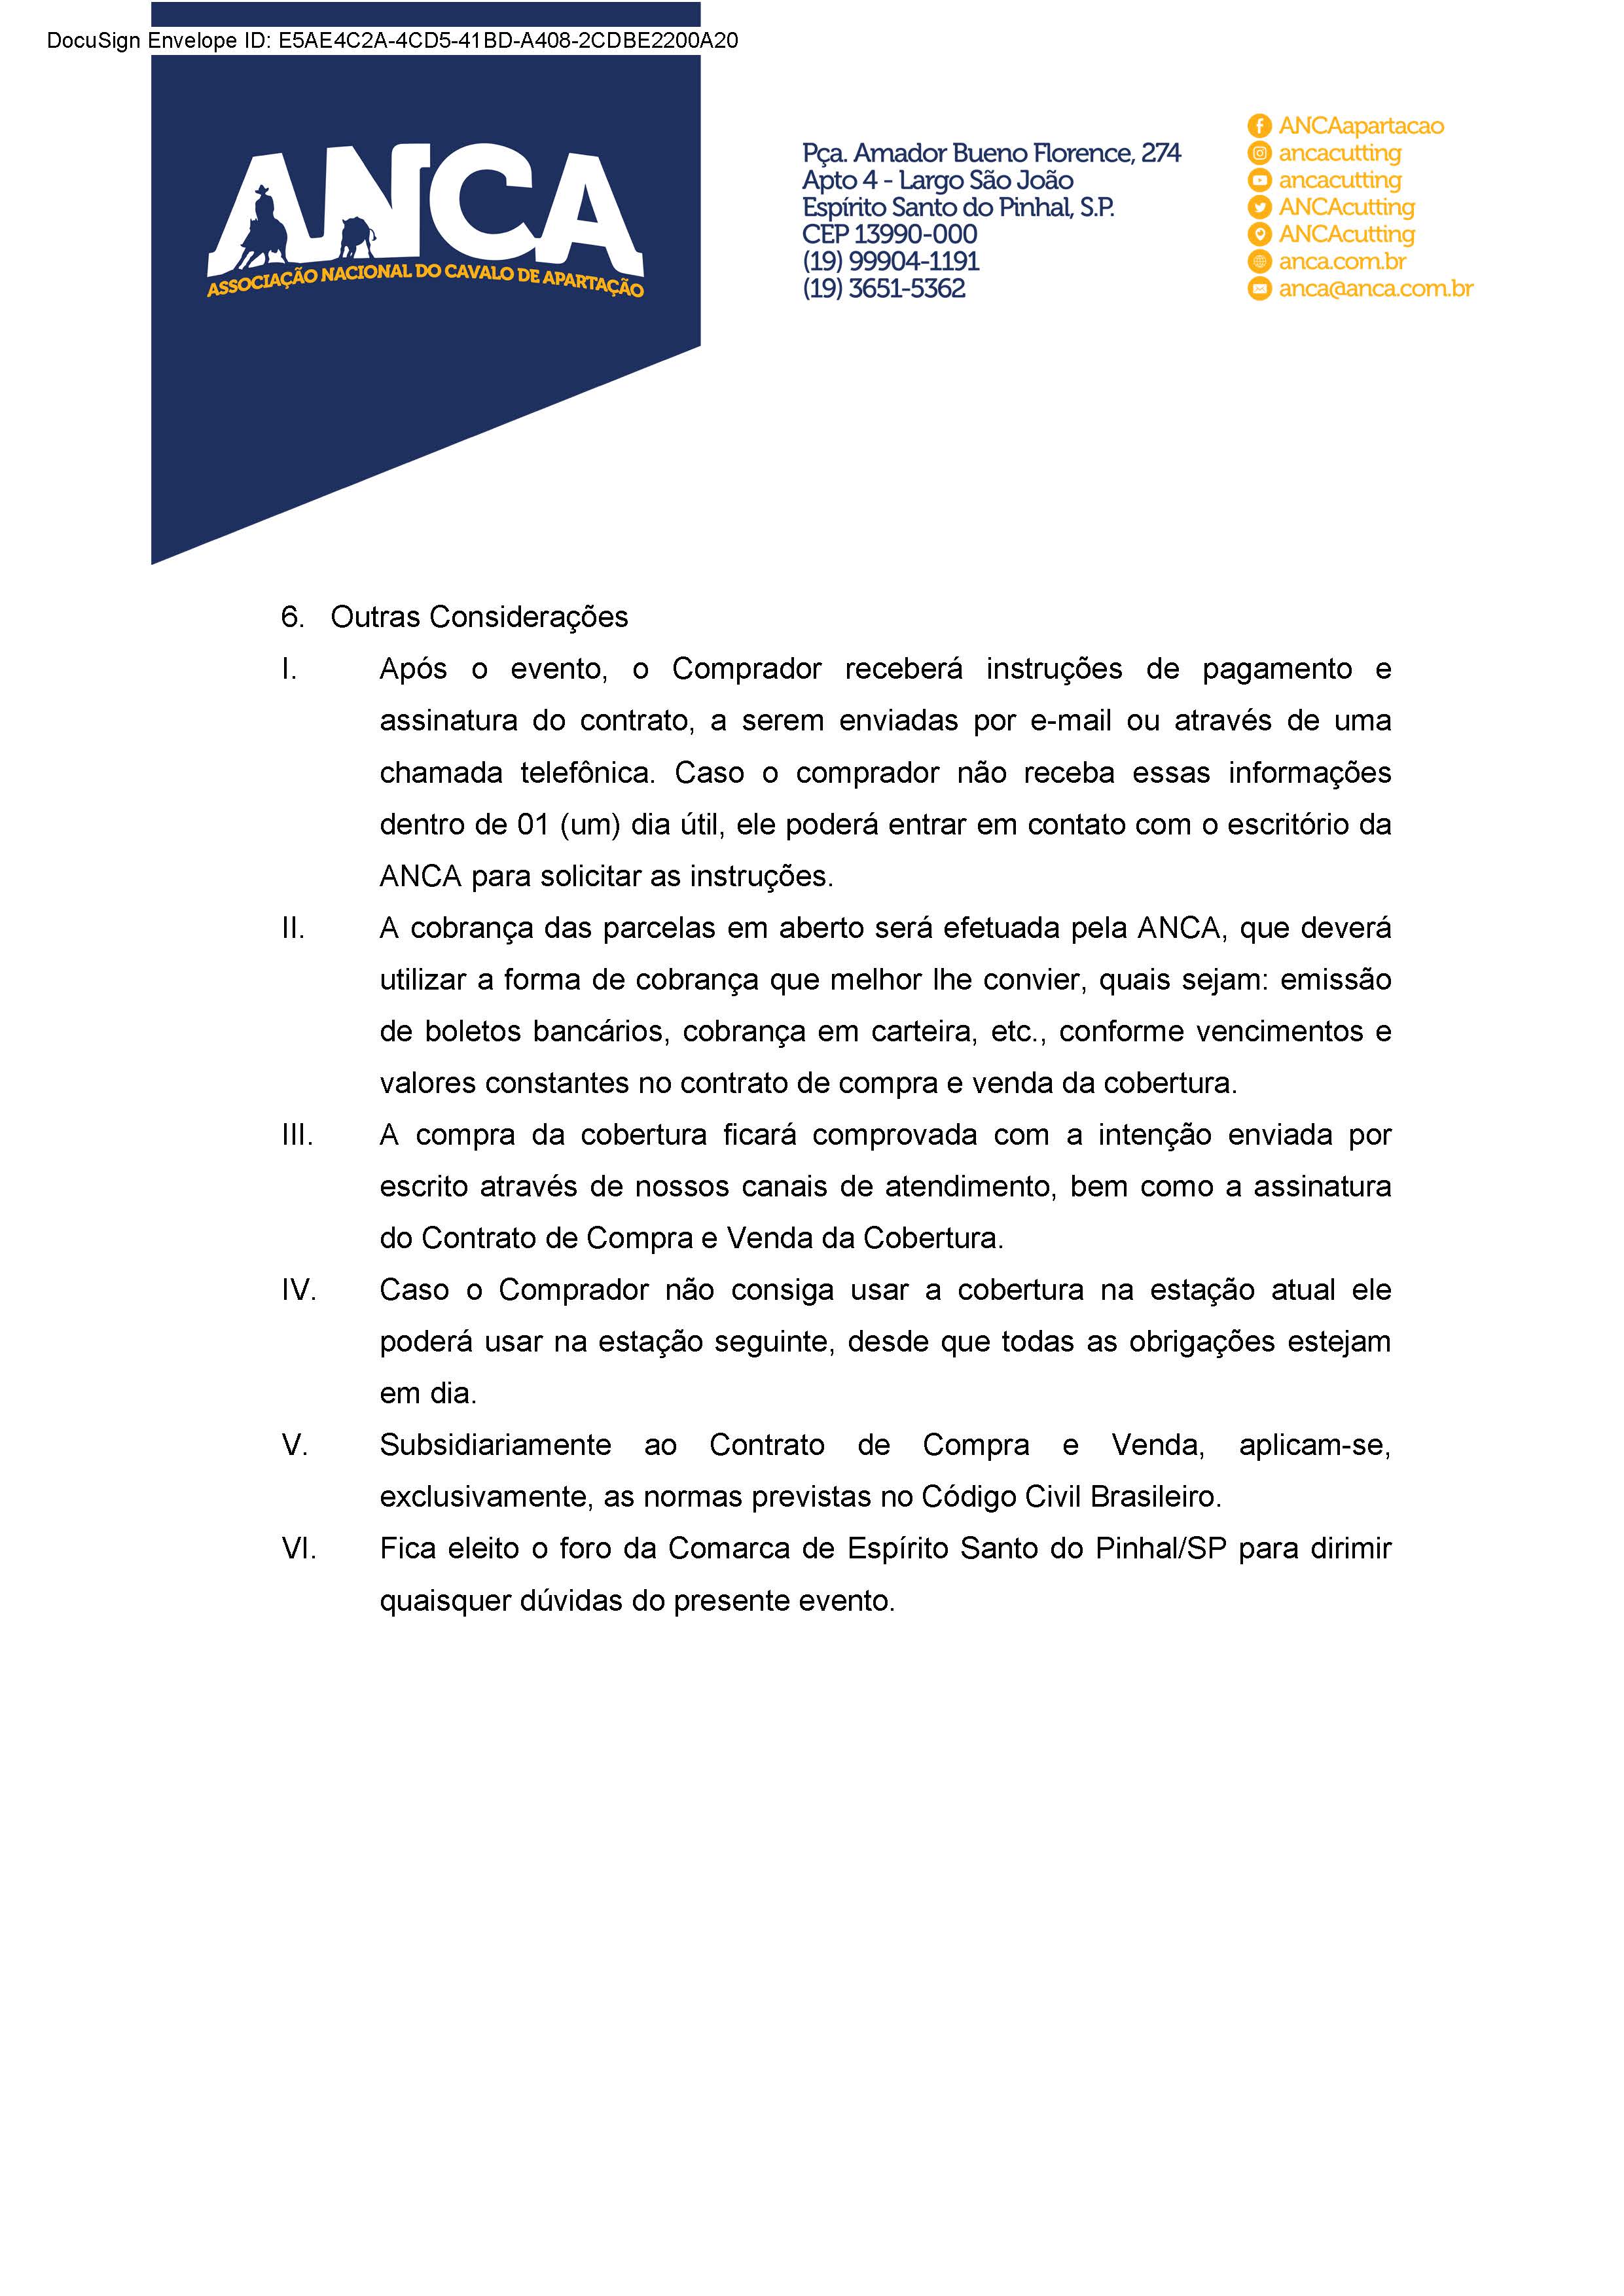 Regulamento - Vendas de Coberturas da ANCA 2022 (Oficial) Página 4